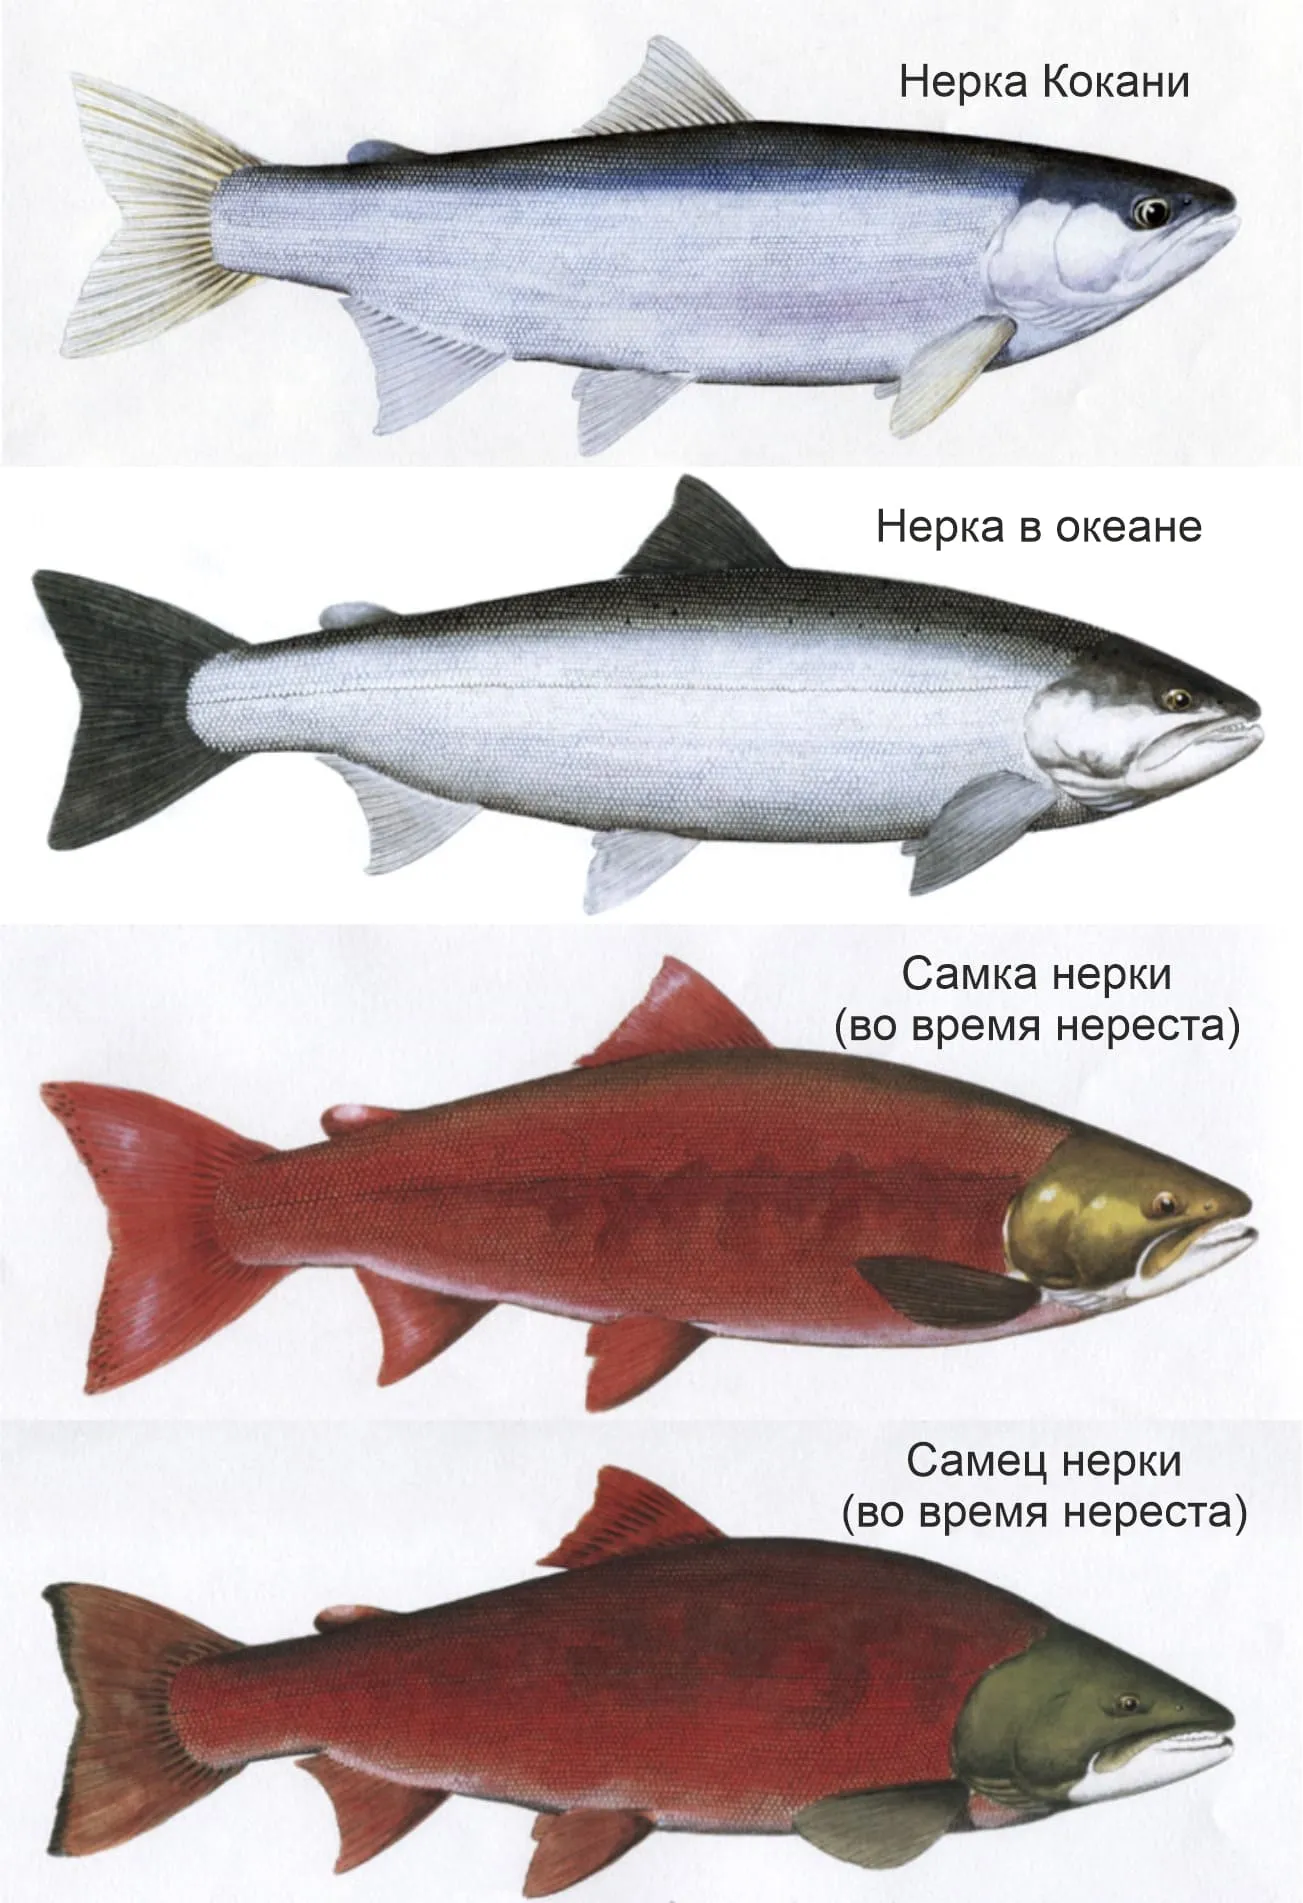 Красная рыба виды и названия. Семейство лососевых нерка. Нерка рыба красная. Лосось нерка. Нерка кокани.